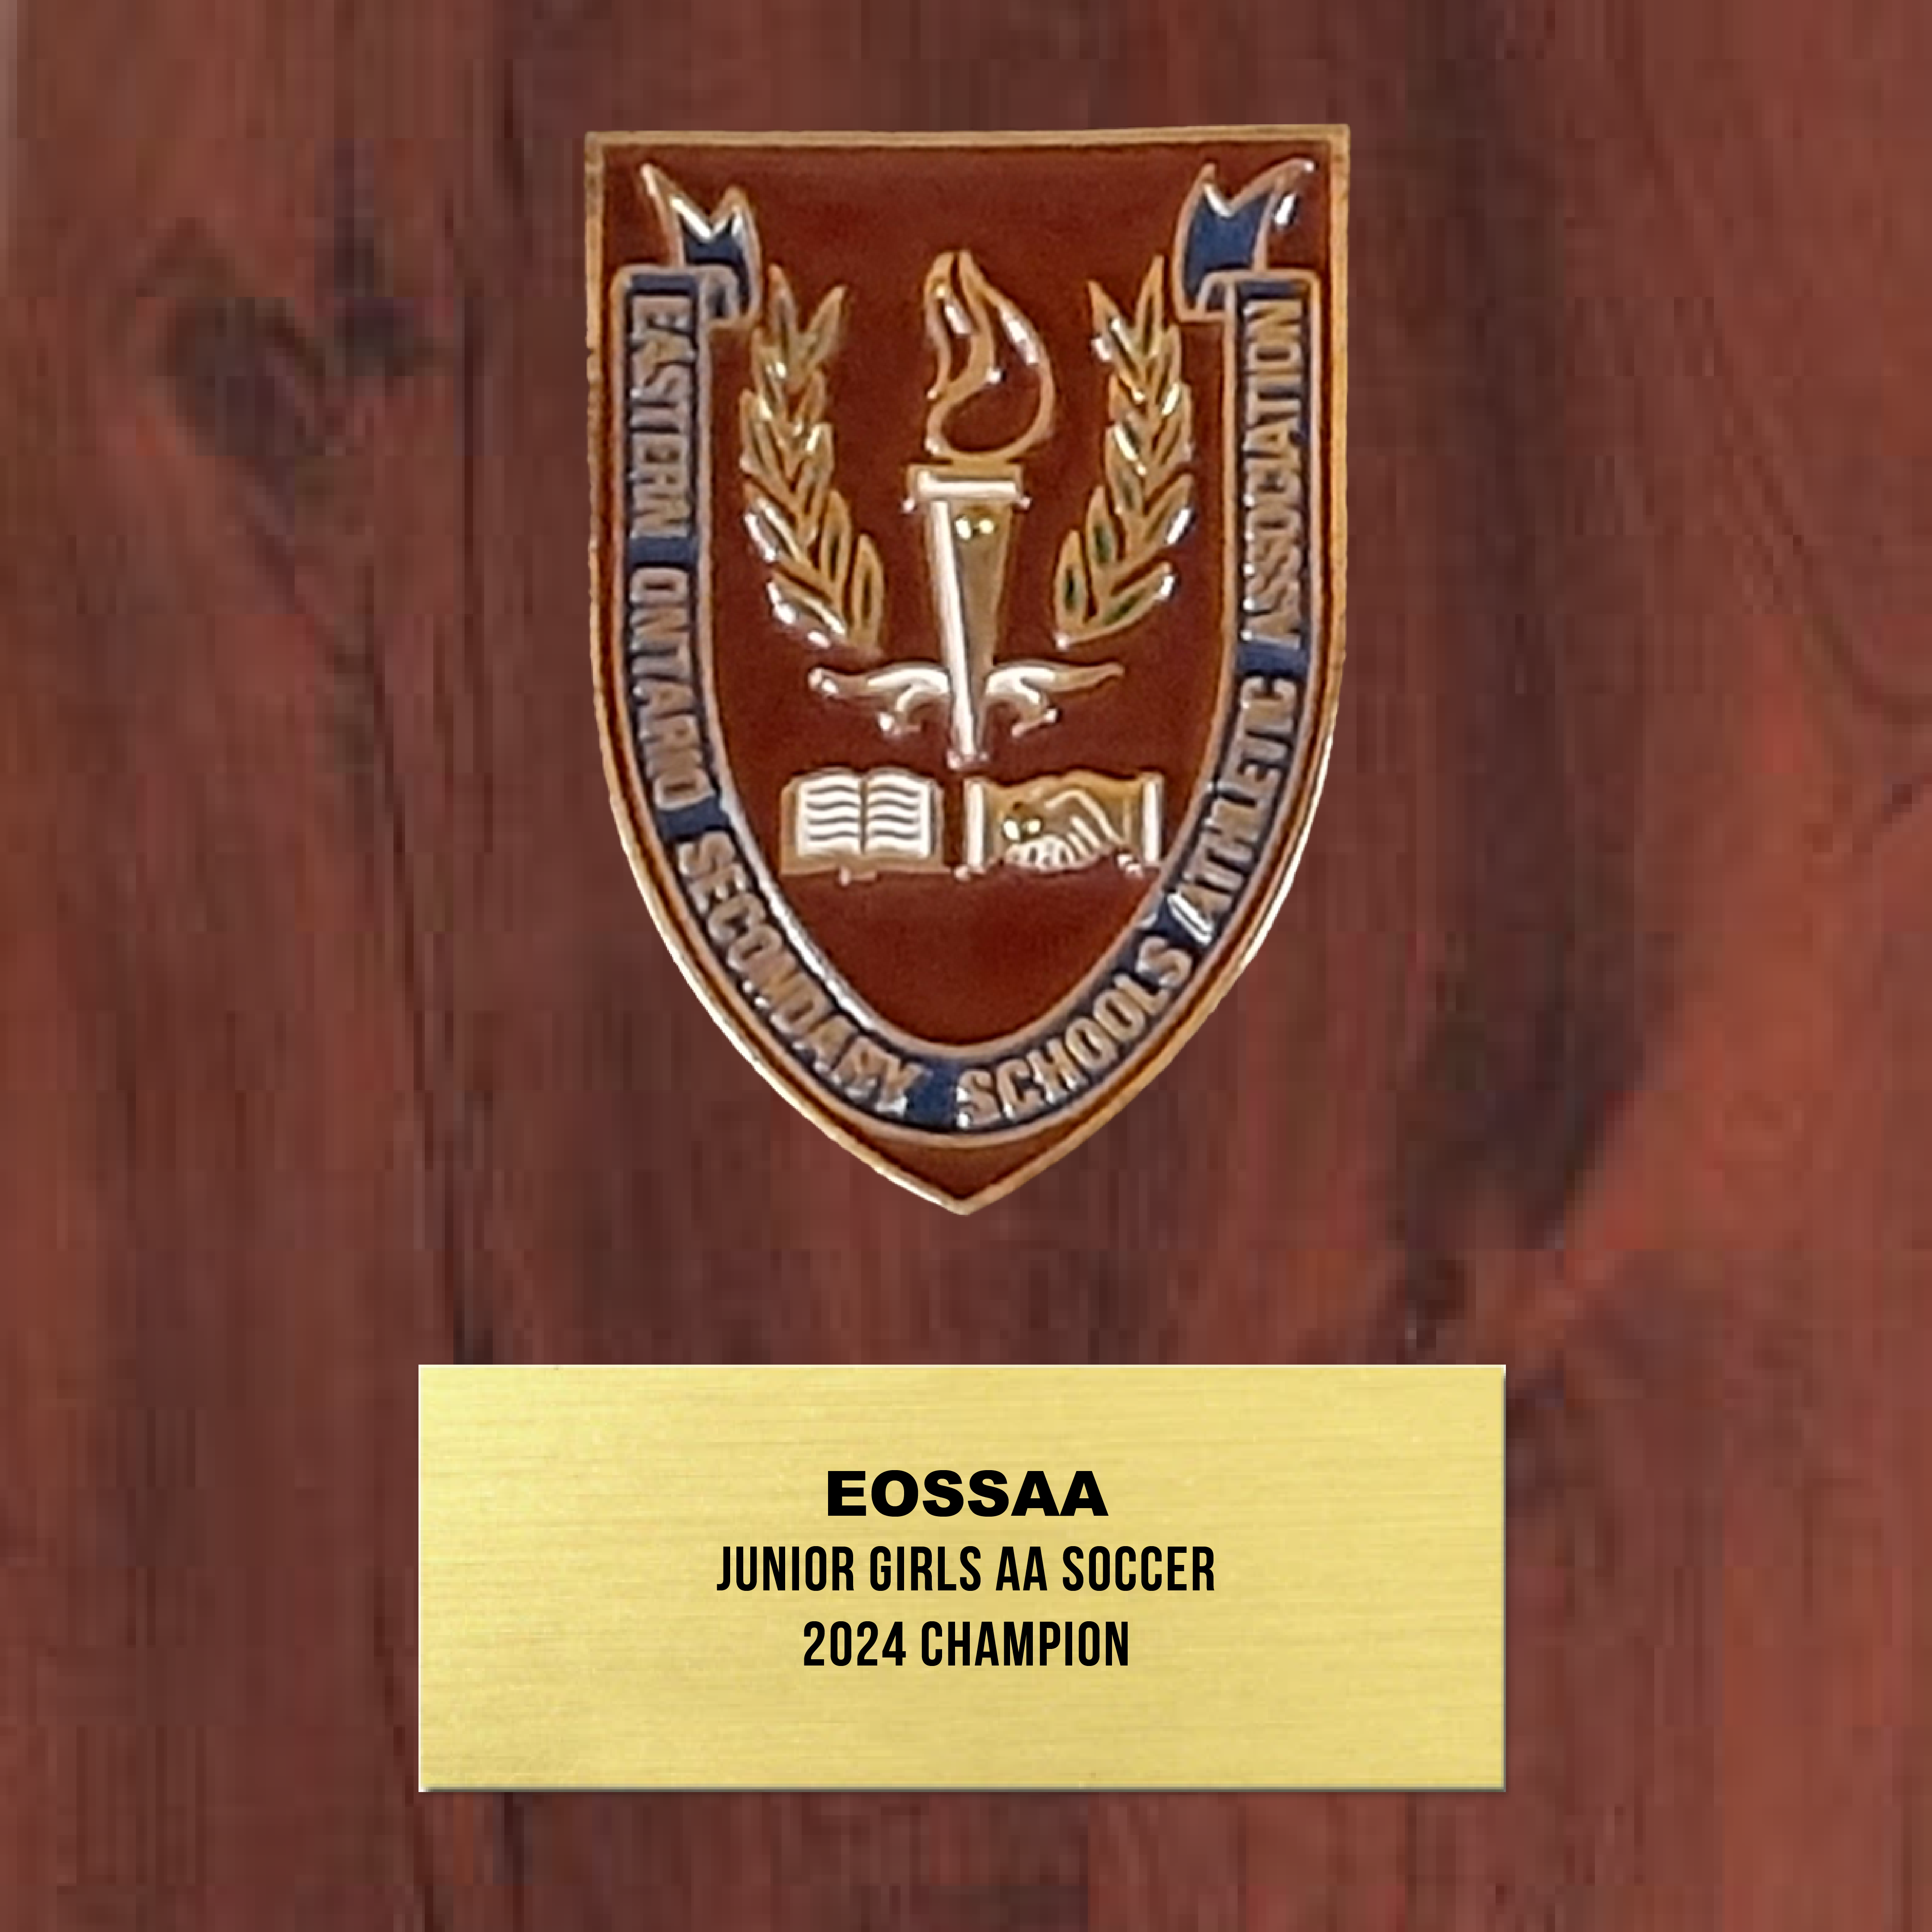 EOSSAA - Plaques de récompense en bois personnalisées avec plaques de métal gravées